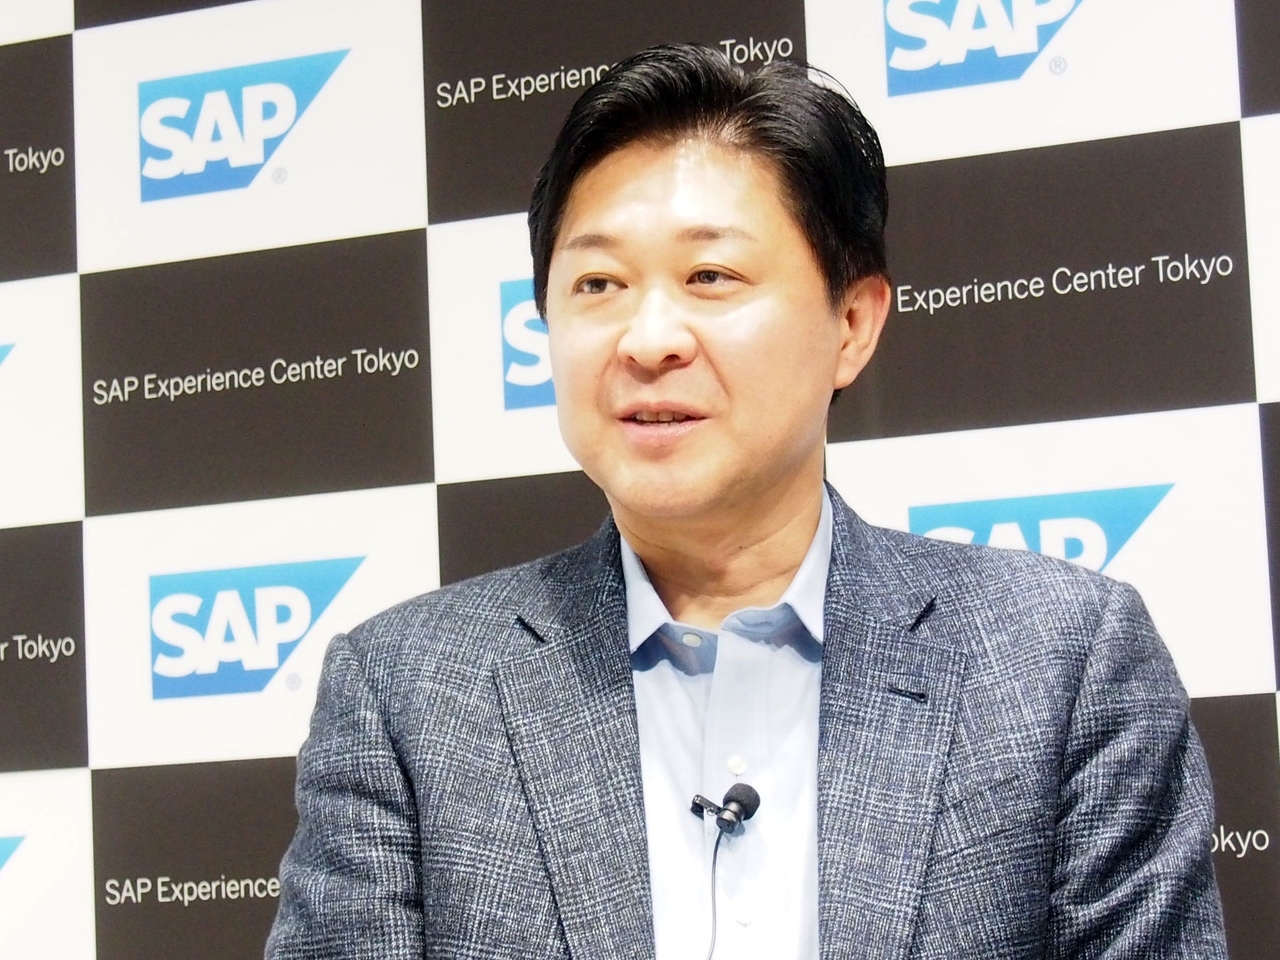 「DXでなくてはならない存在に」--SAPジャパン鈴木次期社長が表明